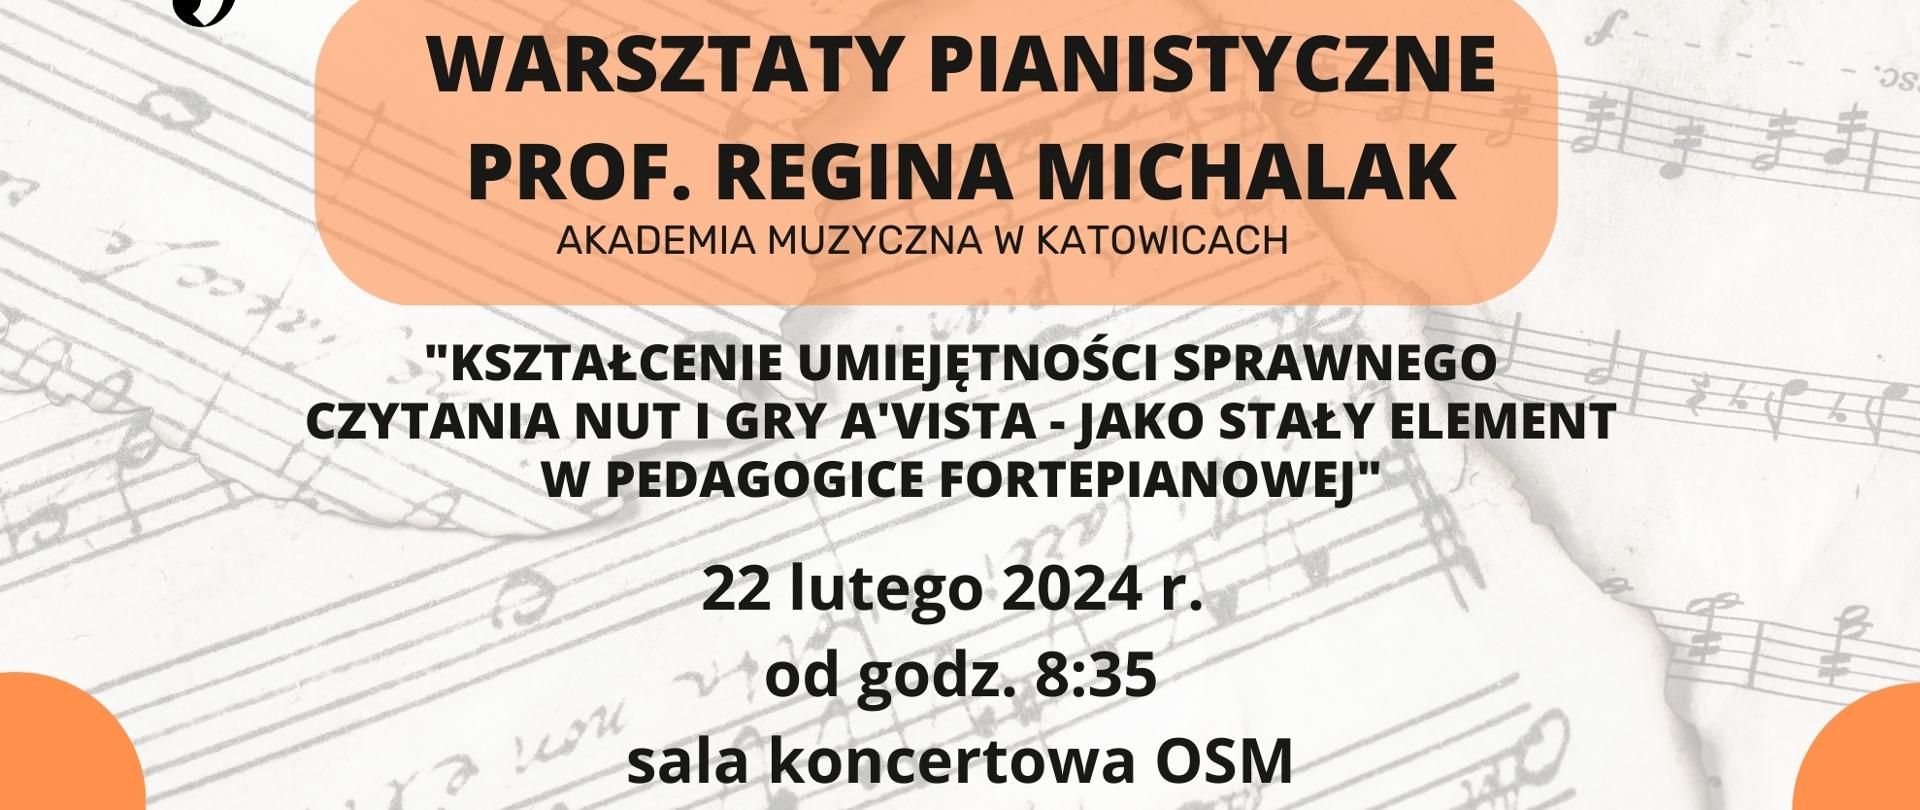 Plakat o poziomej orientacji reklamuje warsztaty pianistyczne, które mają się odbyć 22 lutego 2024 roku. Plakat ma białe tło z przejrzystym nadrukiem z nut, nad którym znajdują się duże, pomarańczowe kształty o nieregularnych brzegach, stanowiące tło dla tekstu.
W górnej lewej części znajduje się logo Ogólnokształcącej Szkoły Muzycznej I i II stopnia im. Karola Lipińskiego w Lublinie, obok w dużych czarnych literach, wypisano "WARSZTATY PIANISTYCZNE" oraz nazwisko i tytuł "PROF. REGINA MICHALAK, Akademia Muzyczna w Katowicach".
Centralna część plakatu zawiera opis tematu warsztatów: "Kształcenie umiejętności sprawnego czytania nut i gry a'vista jako stały element w pedagogice fortepianowej".
Na dole plakatu podano datę i czas warsztatów "22 lutego 2024 r. od godz. 8:35" oraz miejsce, które to "sala koncertowa OSM". 